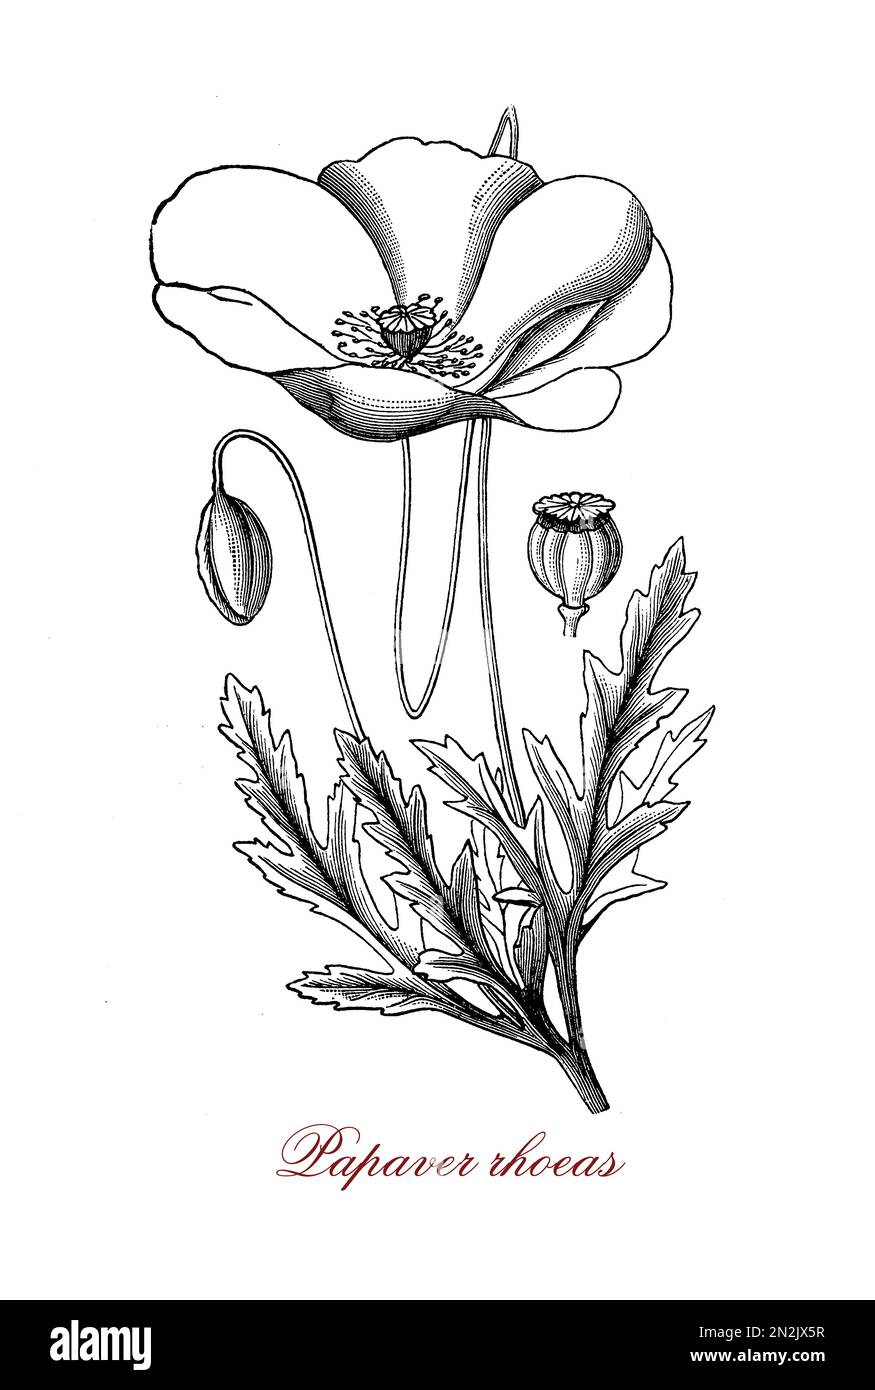 Papaver Rhoeas oder roter Mohn ist eine Unkrautpflanze mit einzelnen Blüten, die Blütenblätter sind leuchtend rot, der Stiel ist in der Regel mit groben Haaren bedeckt. Roter Mohn enthält ein Alkaloid namens Rhoeadin, das ein mildes Beruhigungsmittel ist. Stockfoto